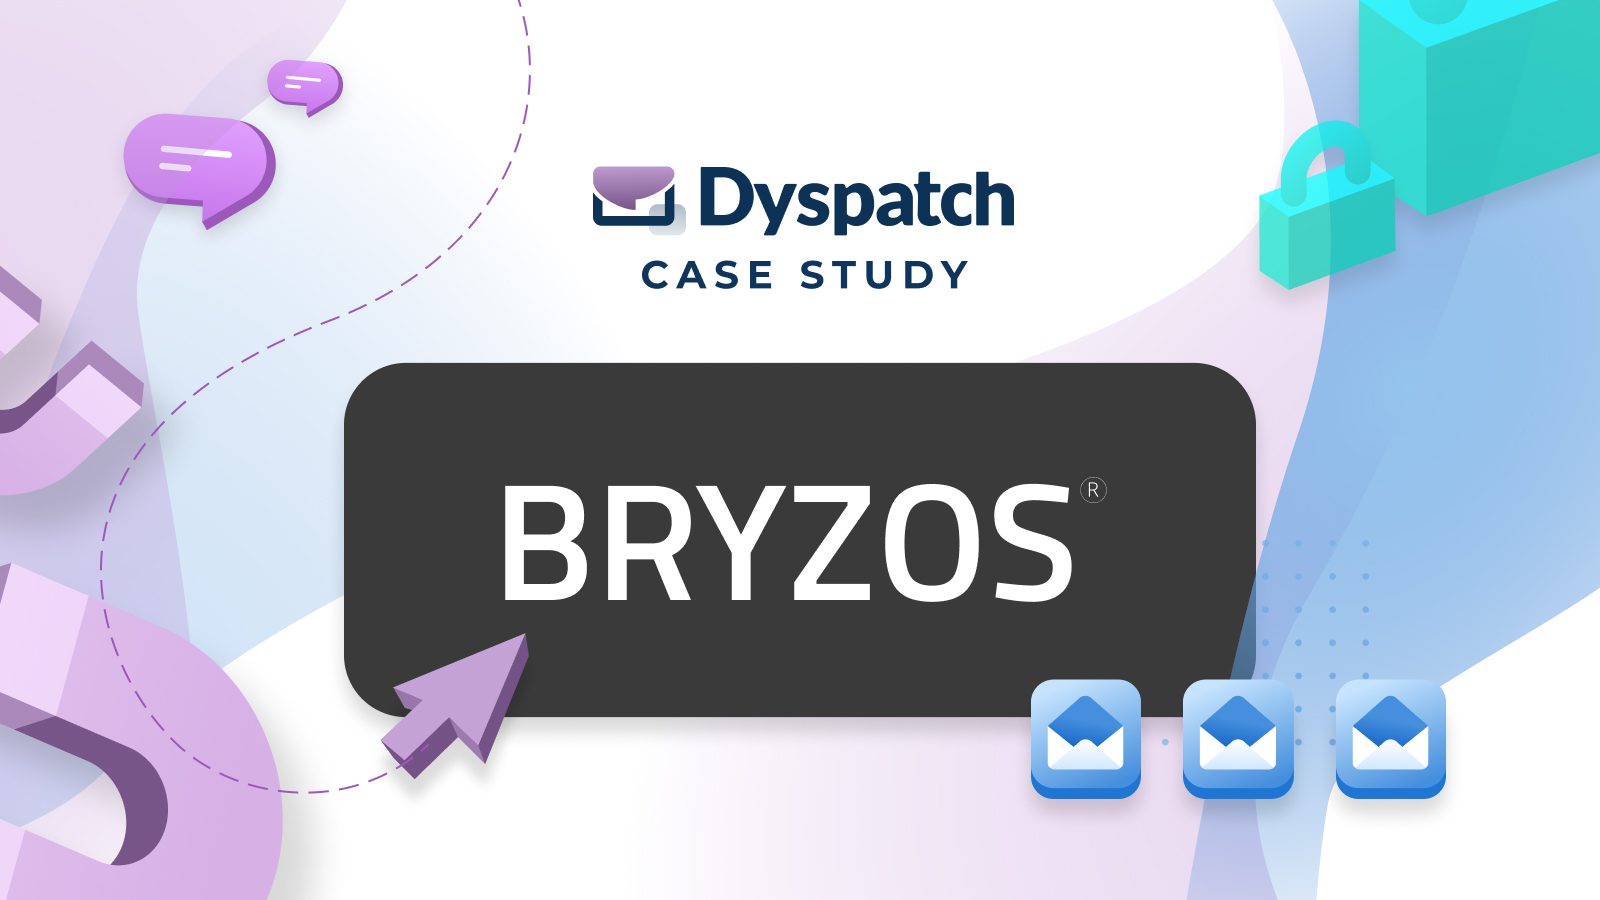 Case study - Bryzos